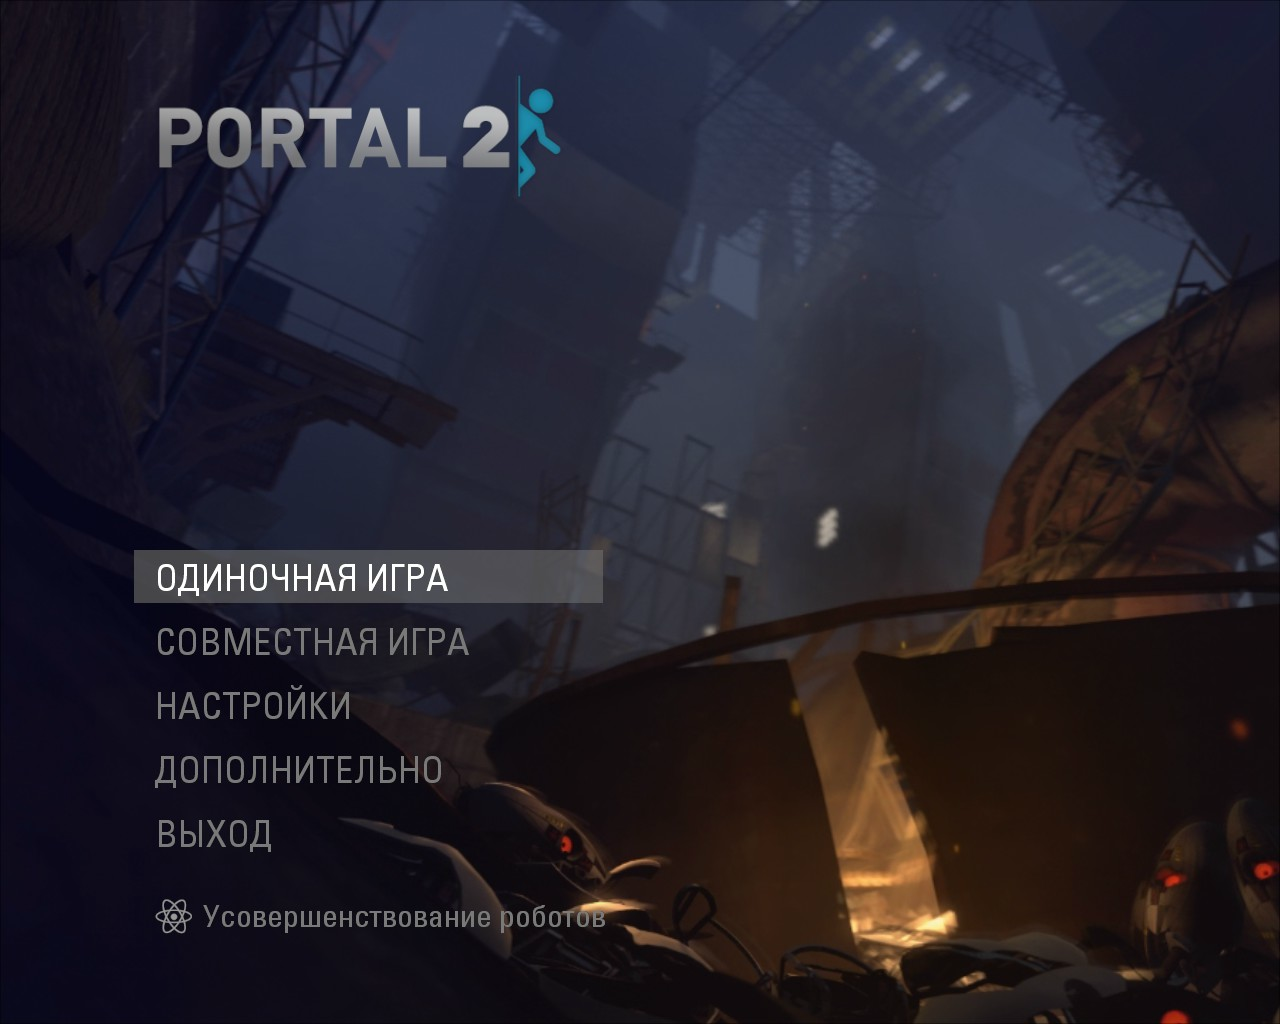 Portal 2 как включить консоль фото 18